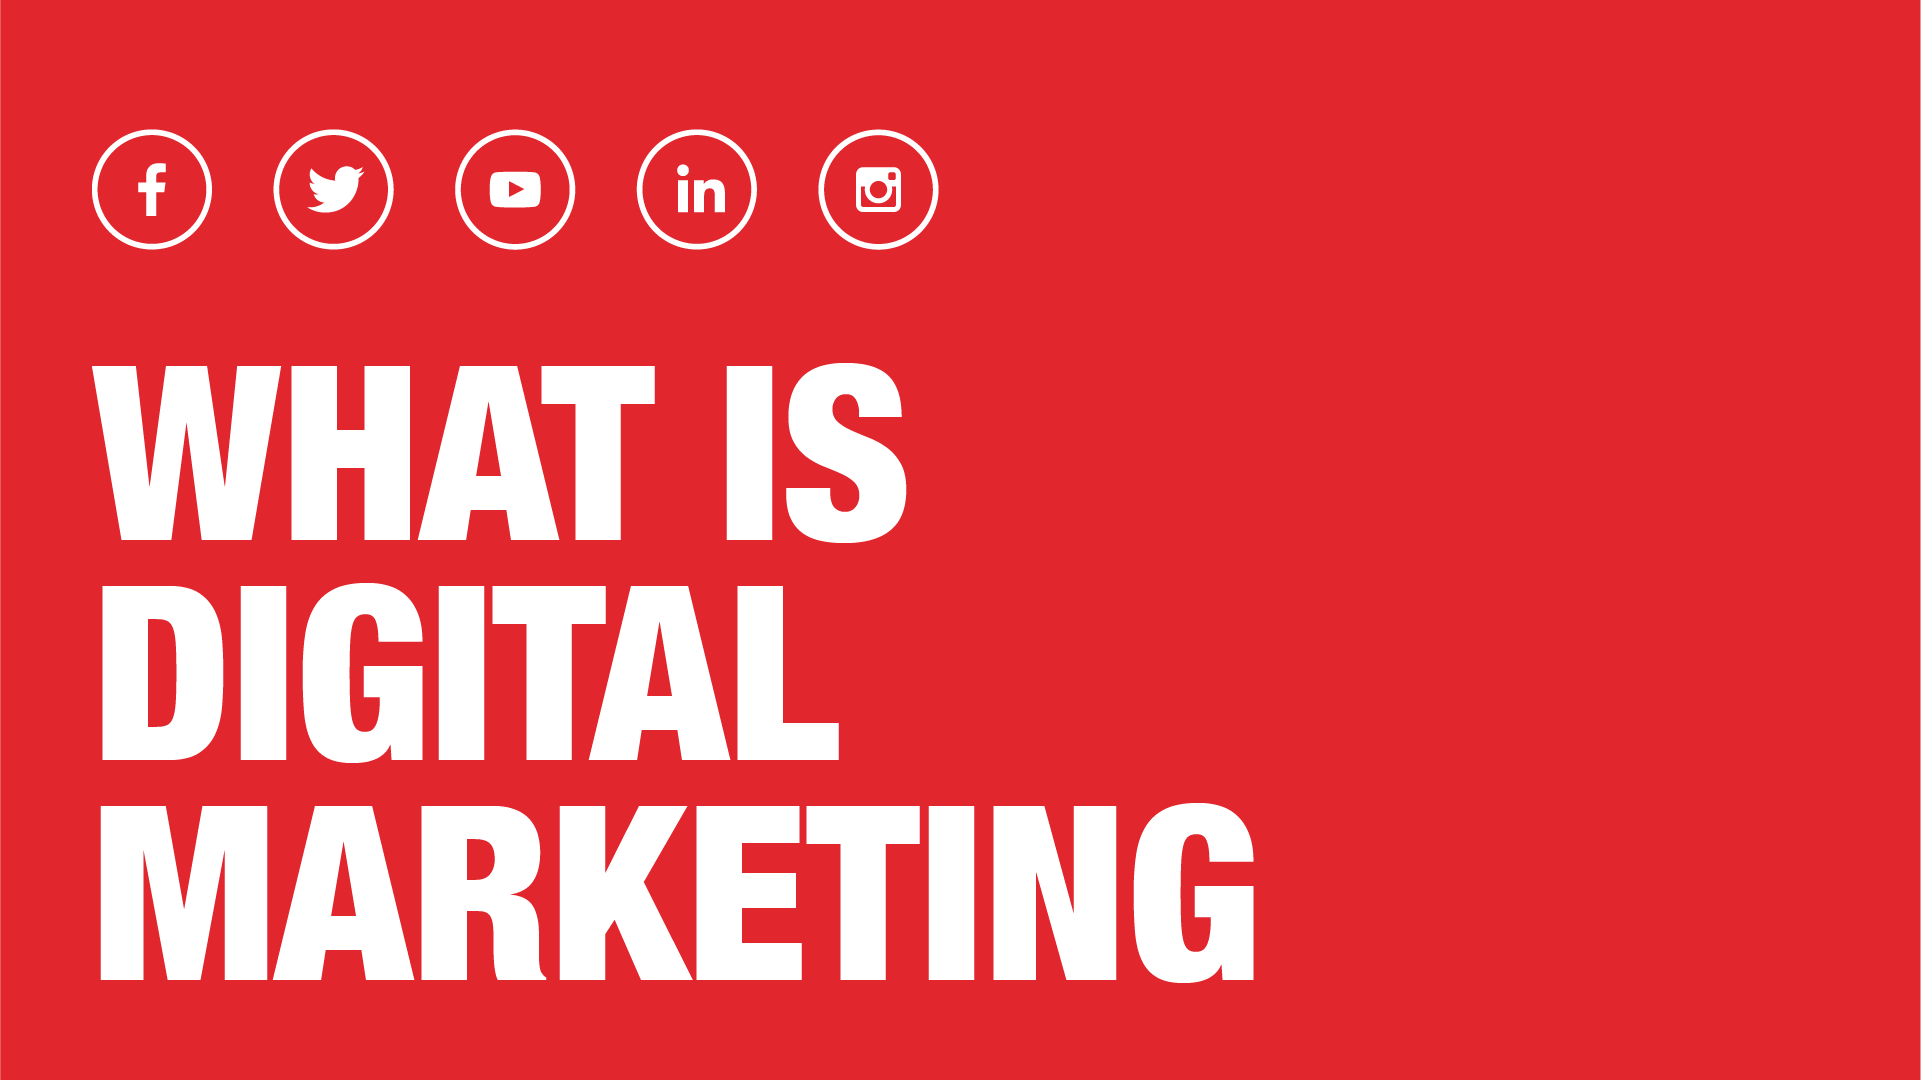 Manraj Ubhi - What is digital marketing?